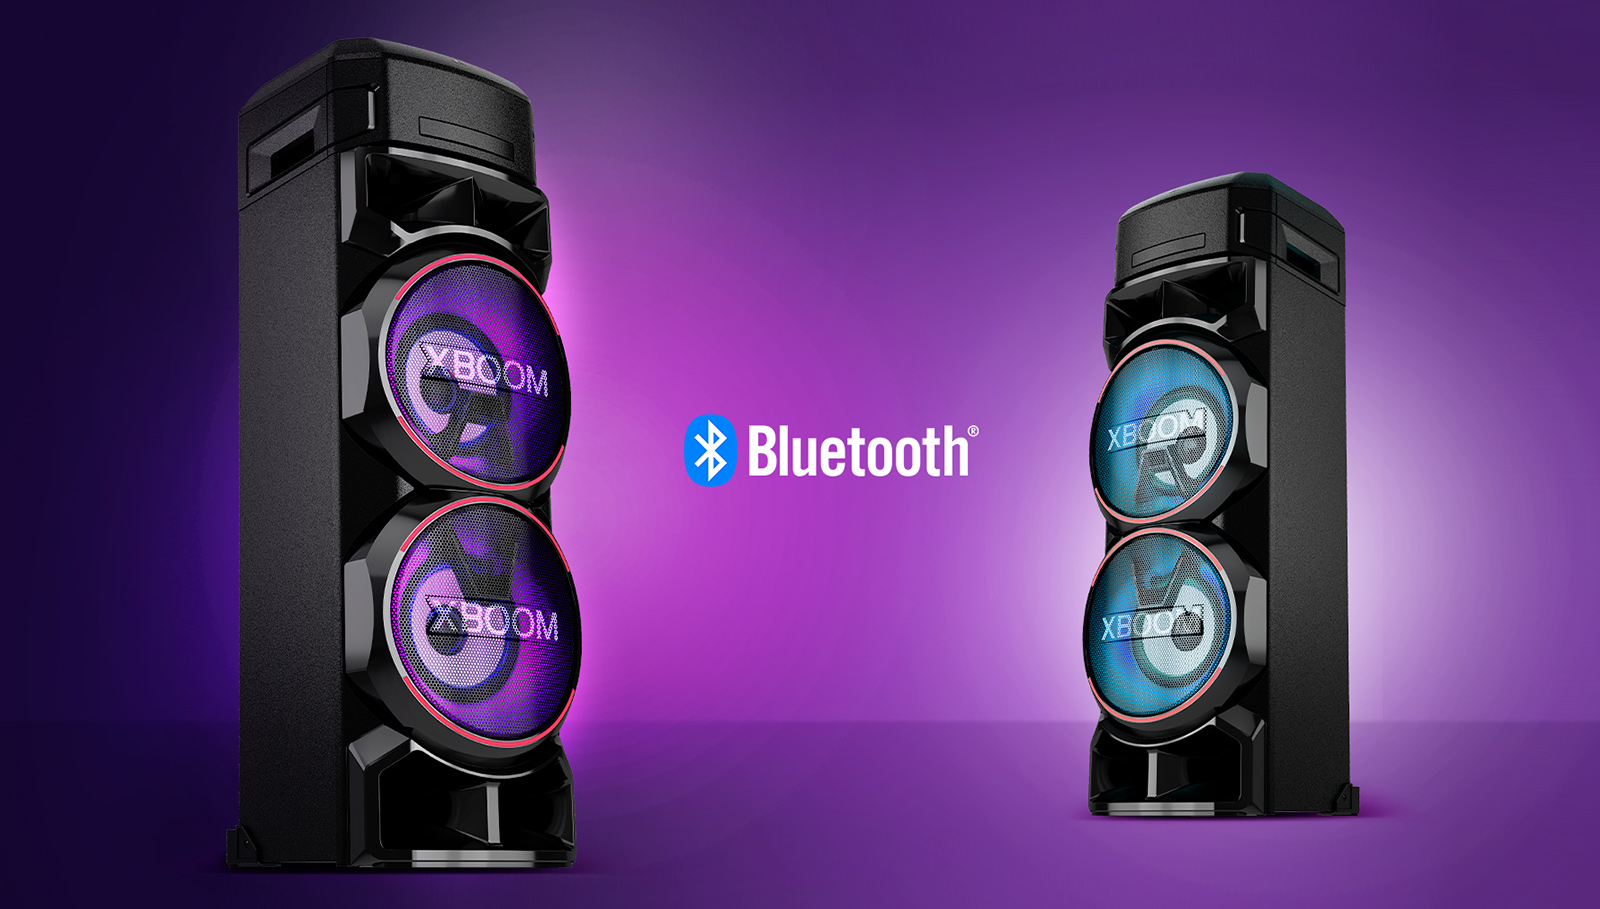 قابلیت Multi Bluetooth به همراه XBOOM App